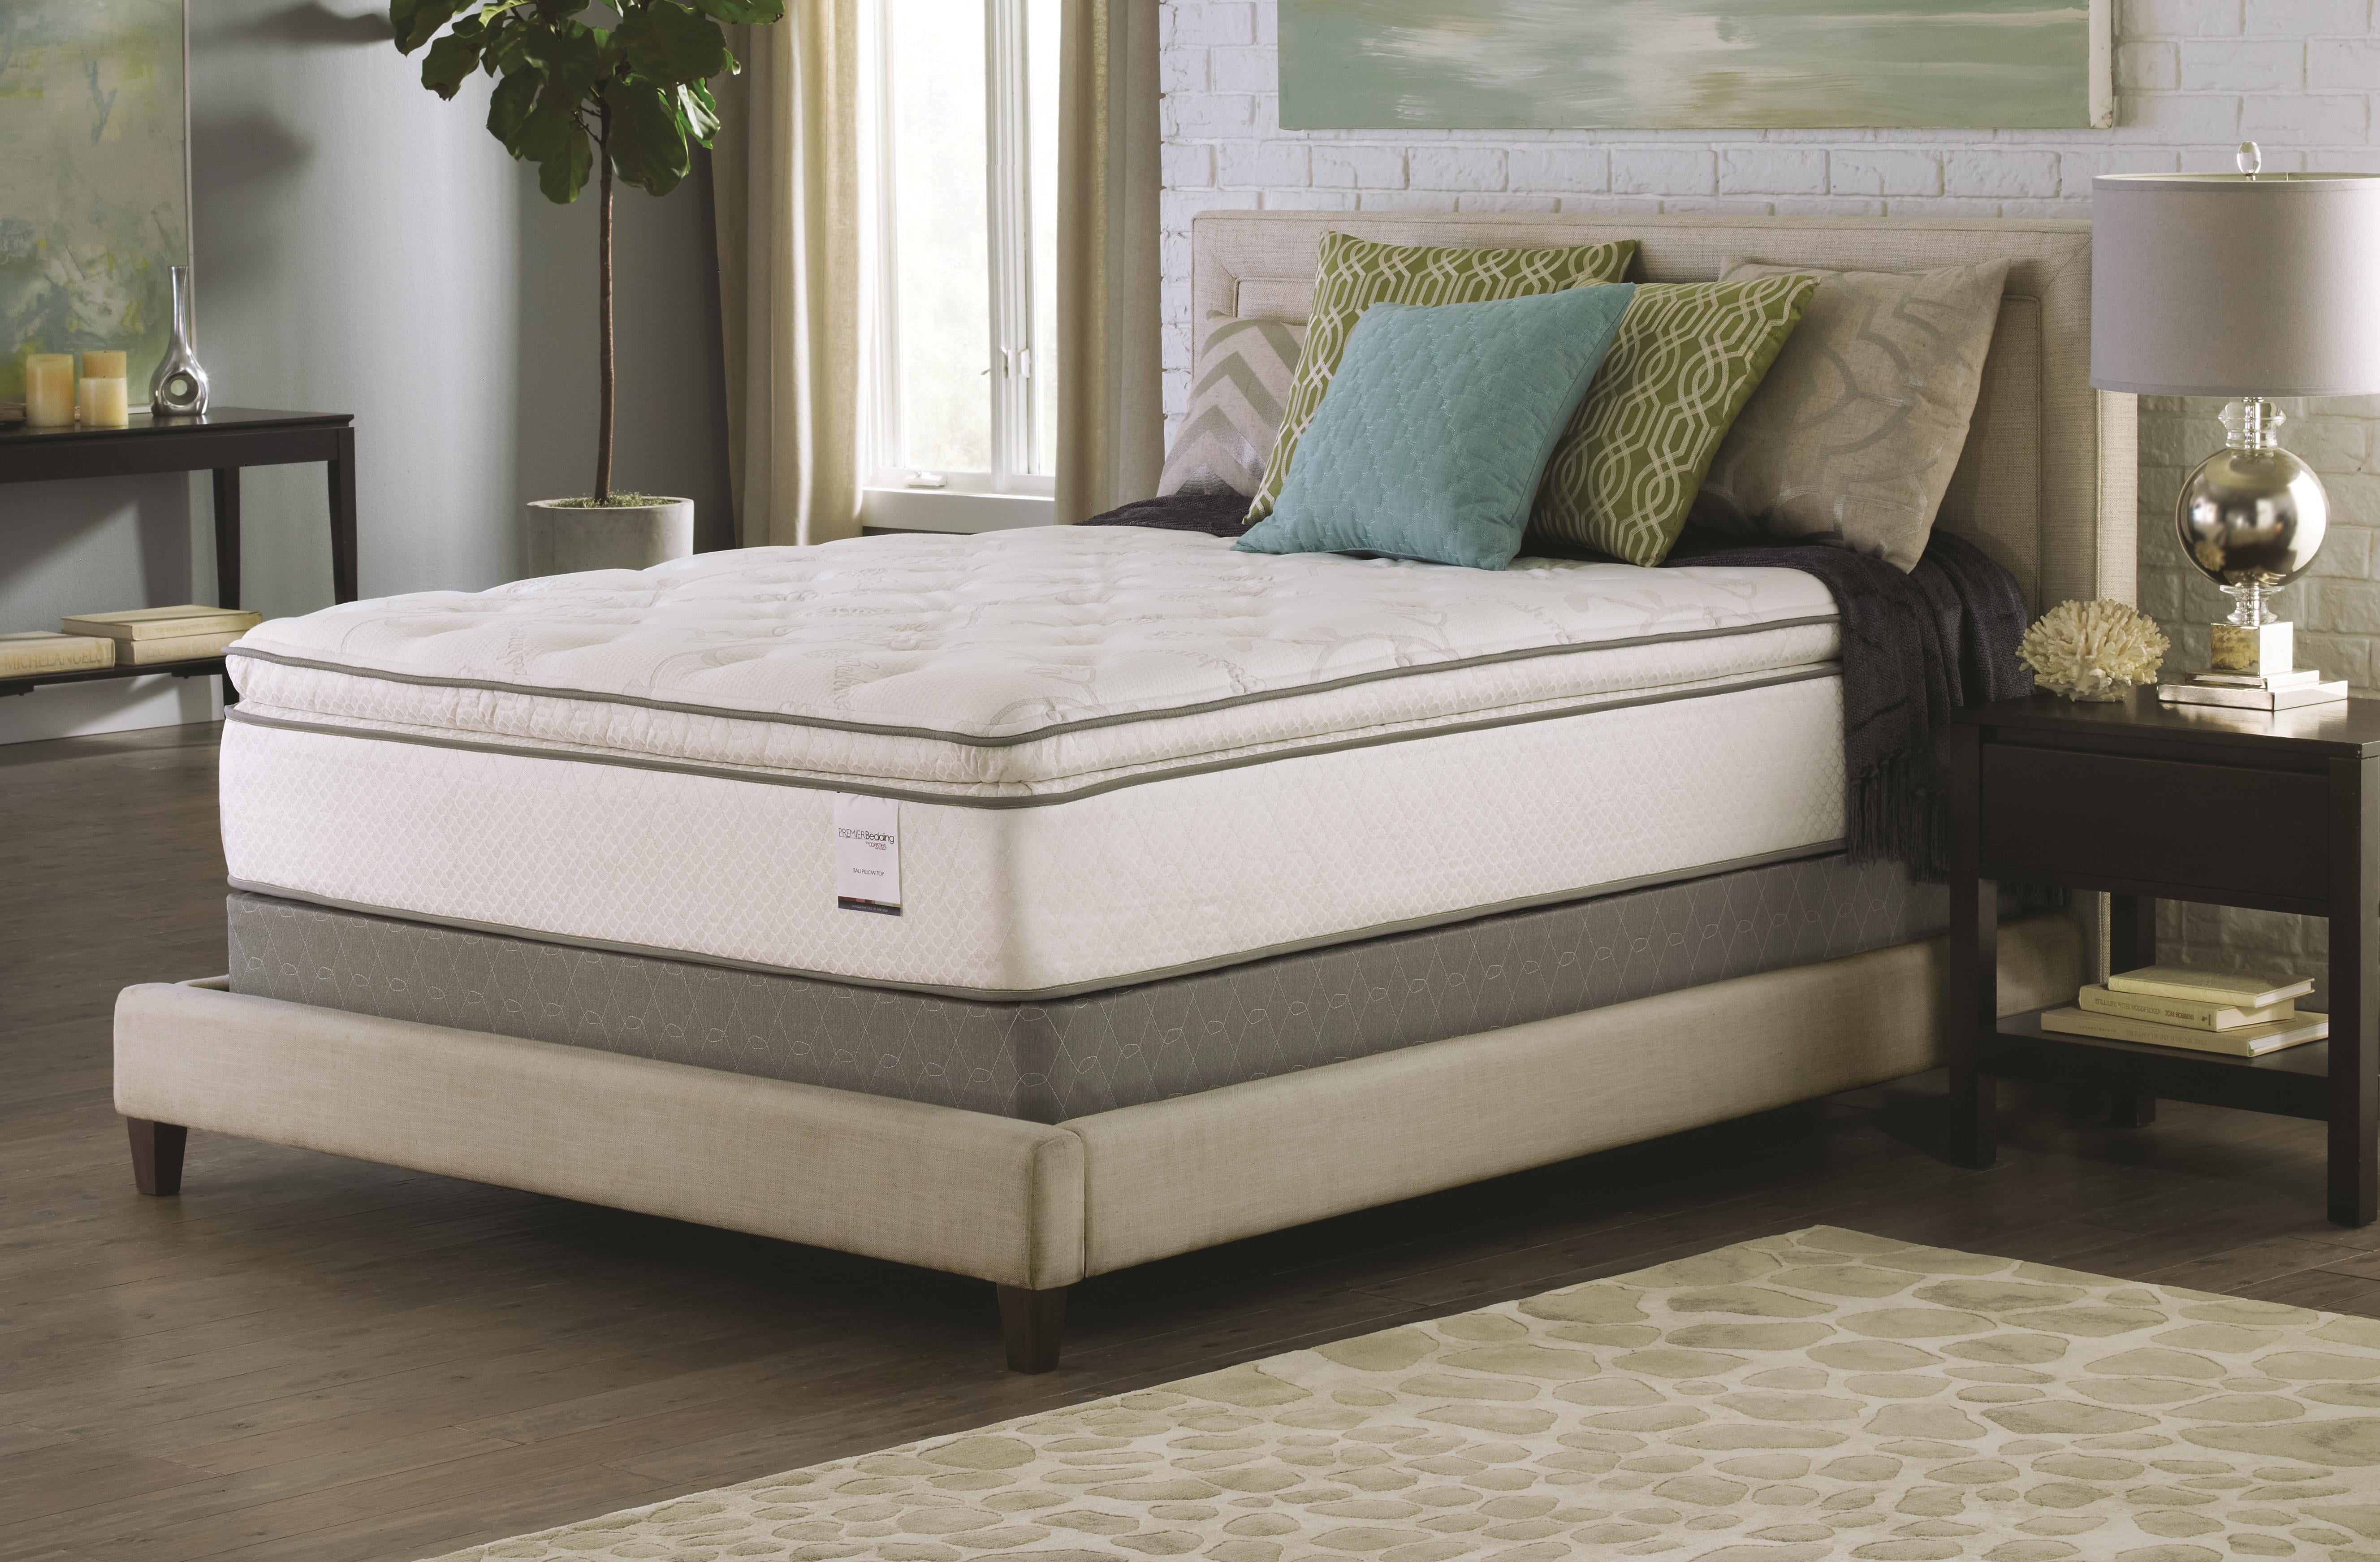 melrose place queen size double pillow top mattress